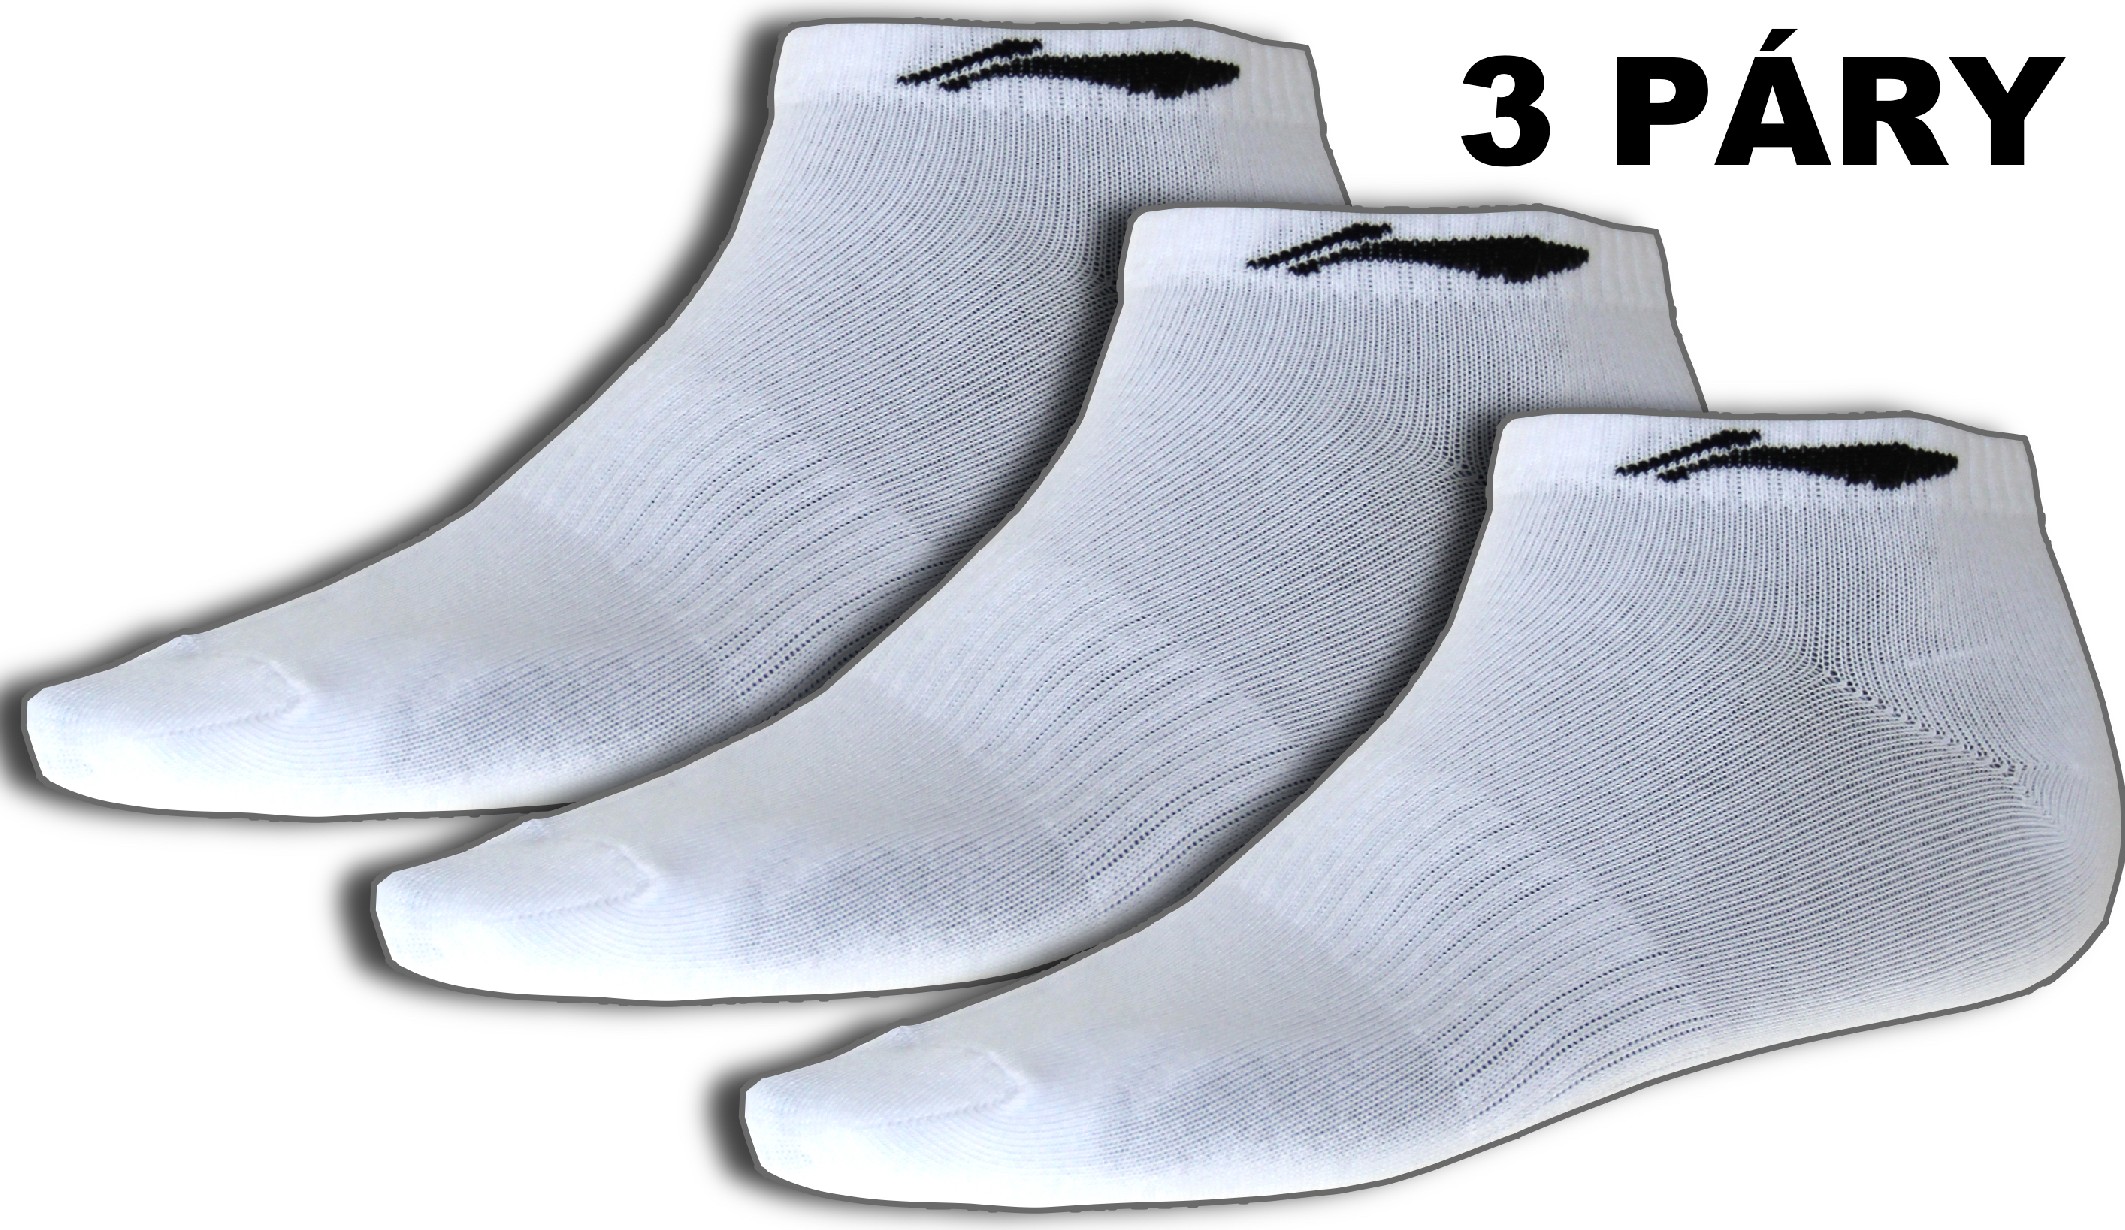 Sportovní ponožky LI-NING STABLE 2016 Pánské - set 3 páry